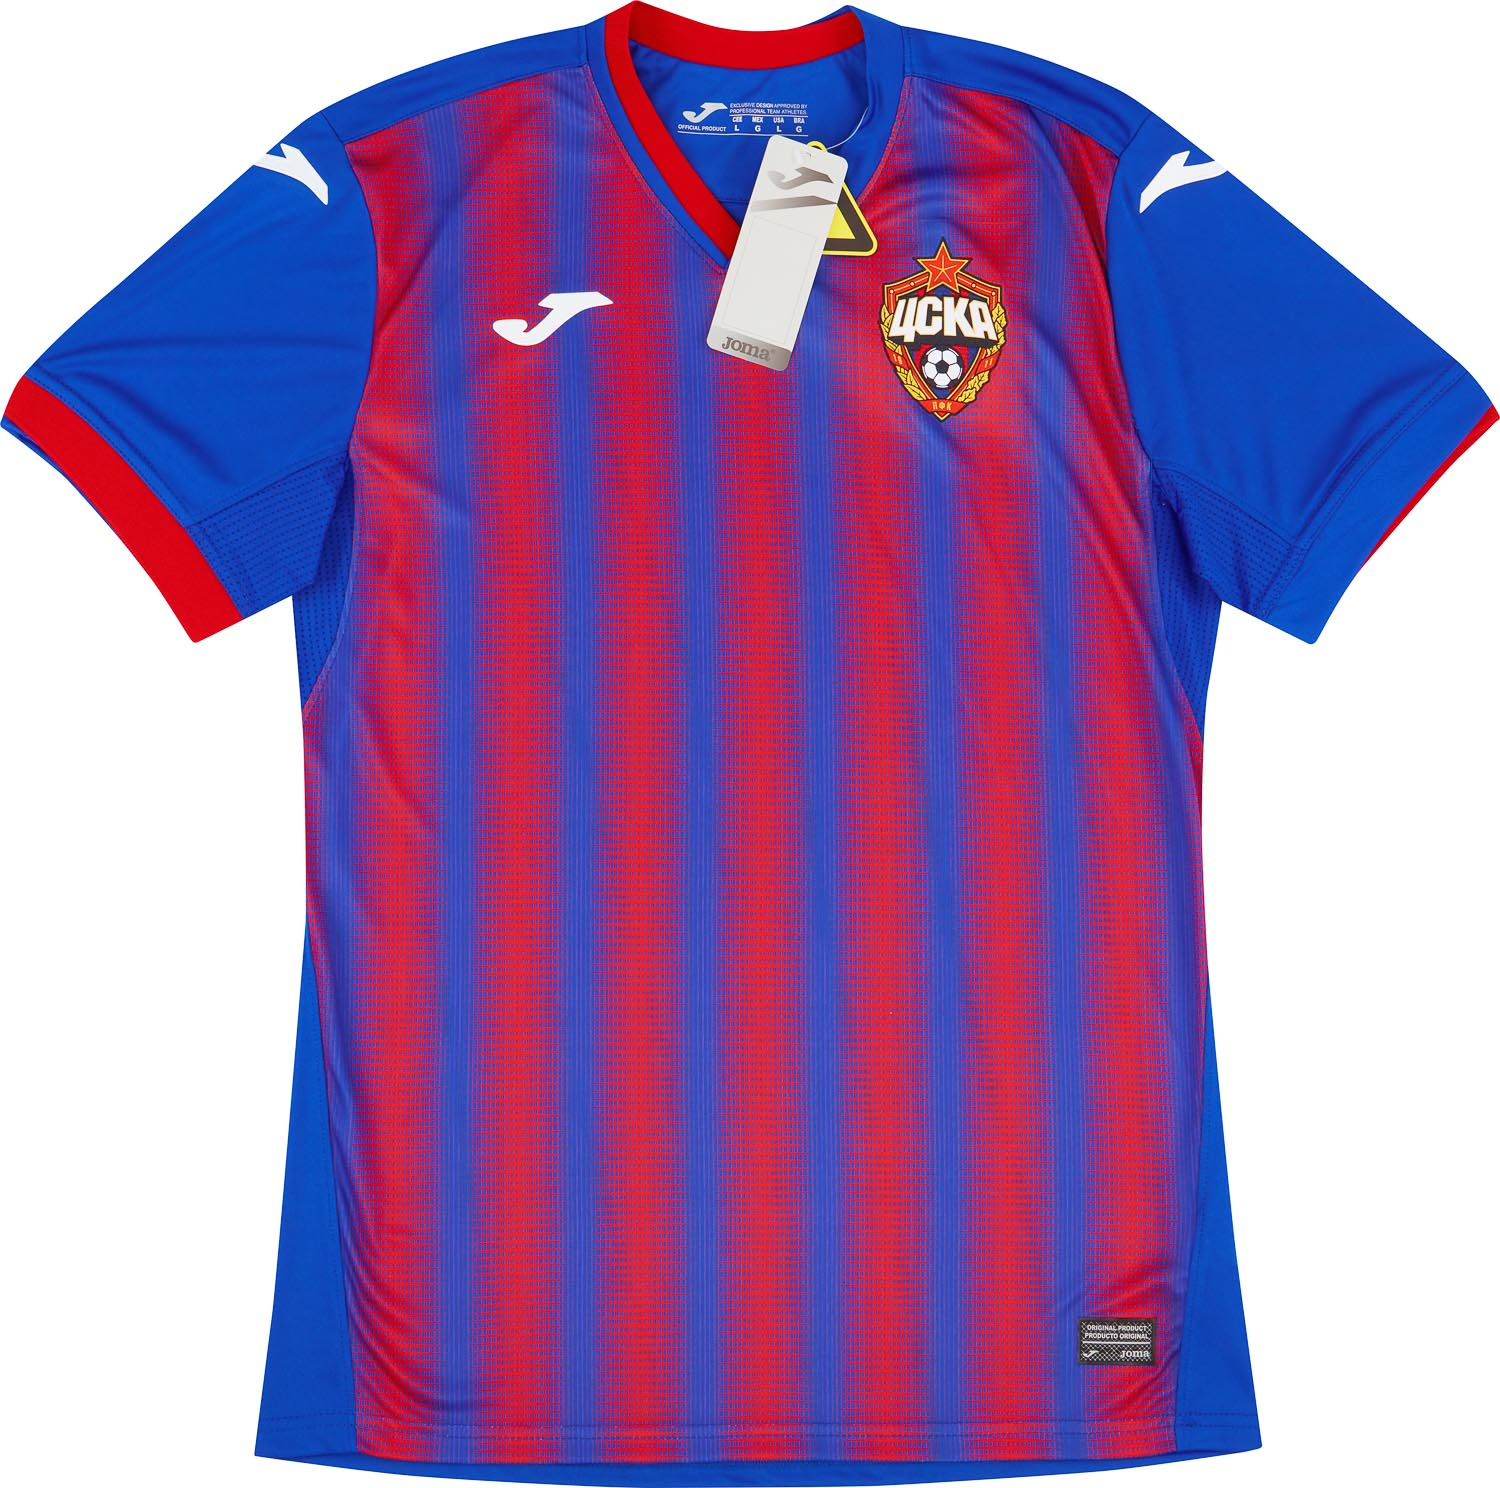 CSKA Moscow  home shirt (Original)